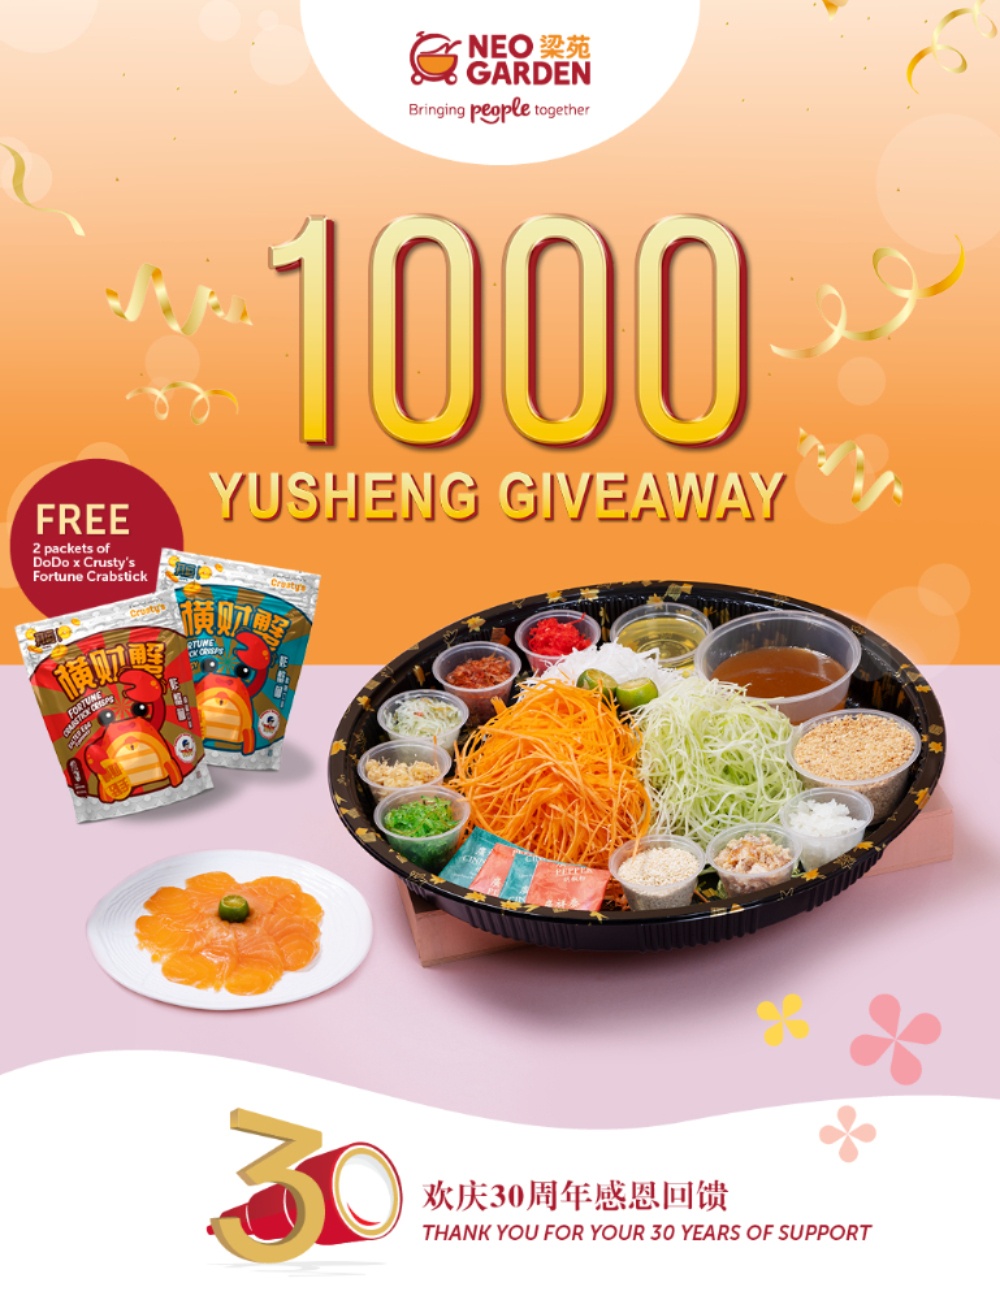 Free Yusheng Giveaway - Neo Garden